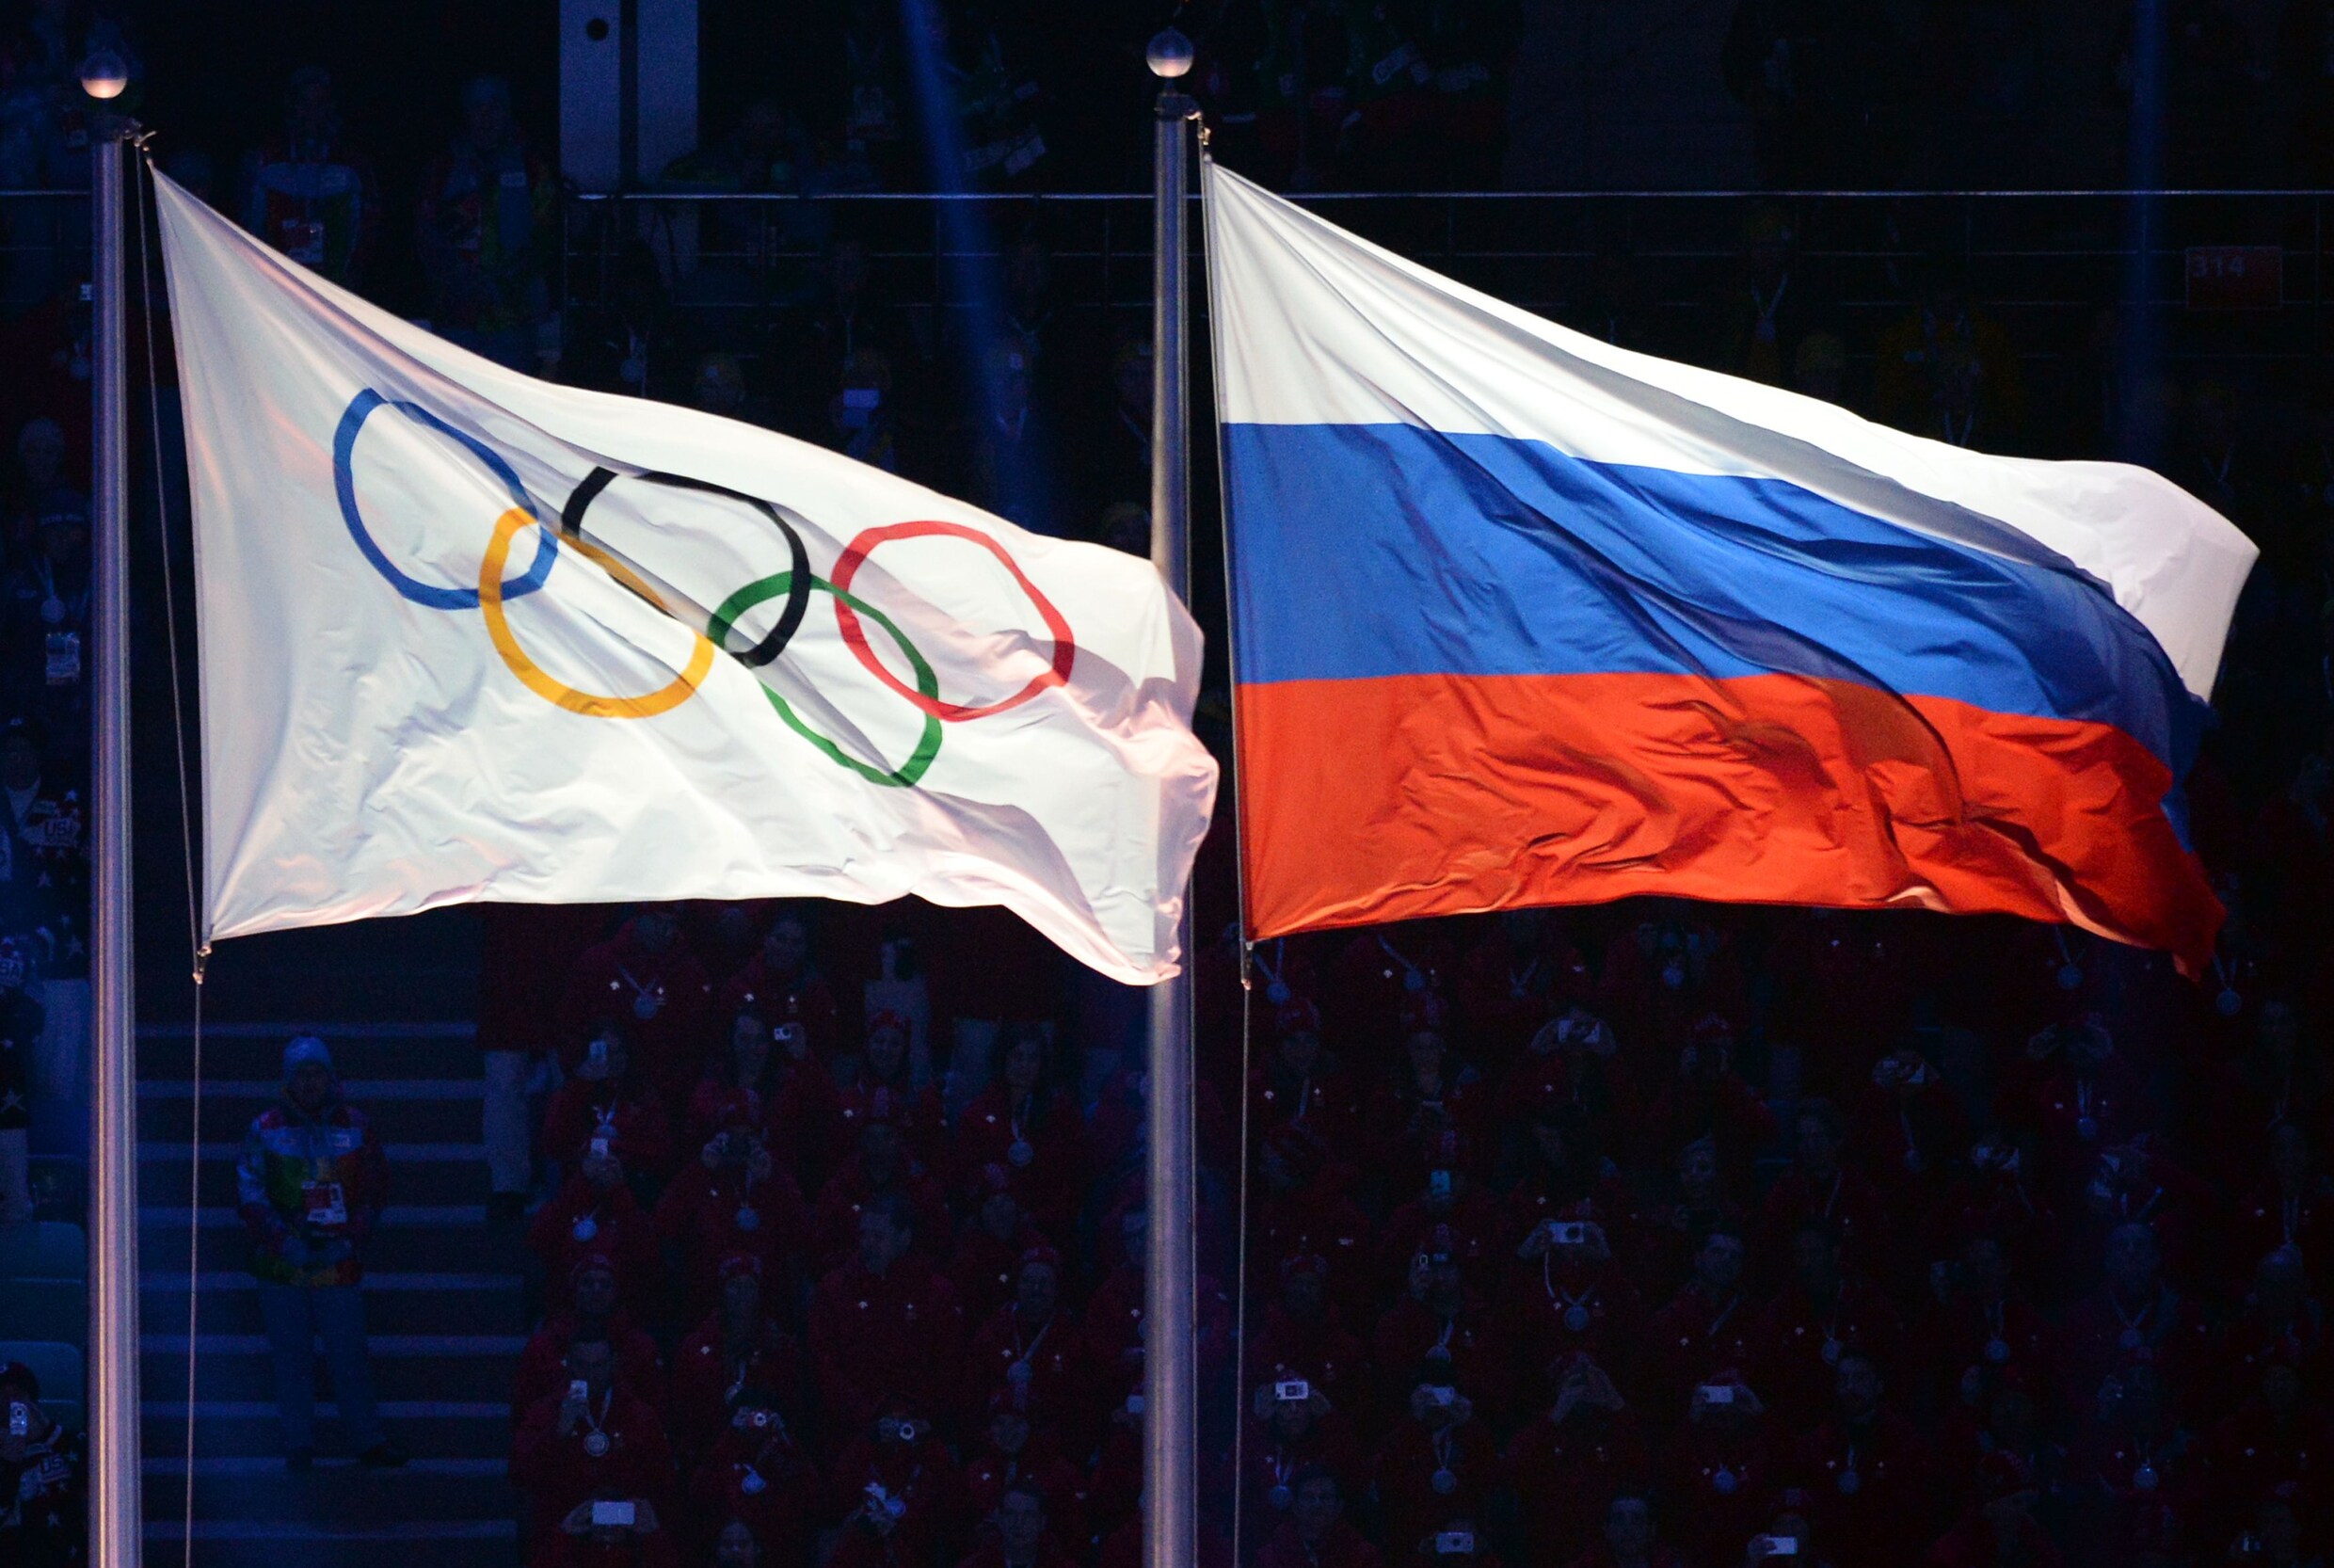 Russische sporters mogen onder strenge voorwaarden toch naar Spelen